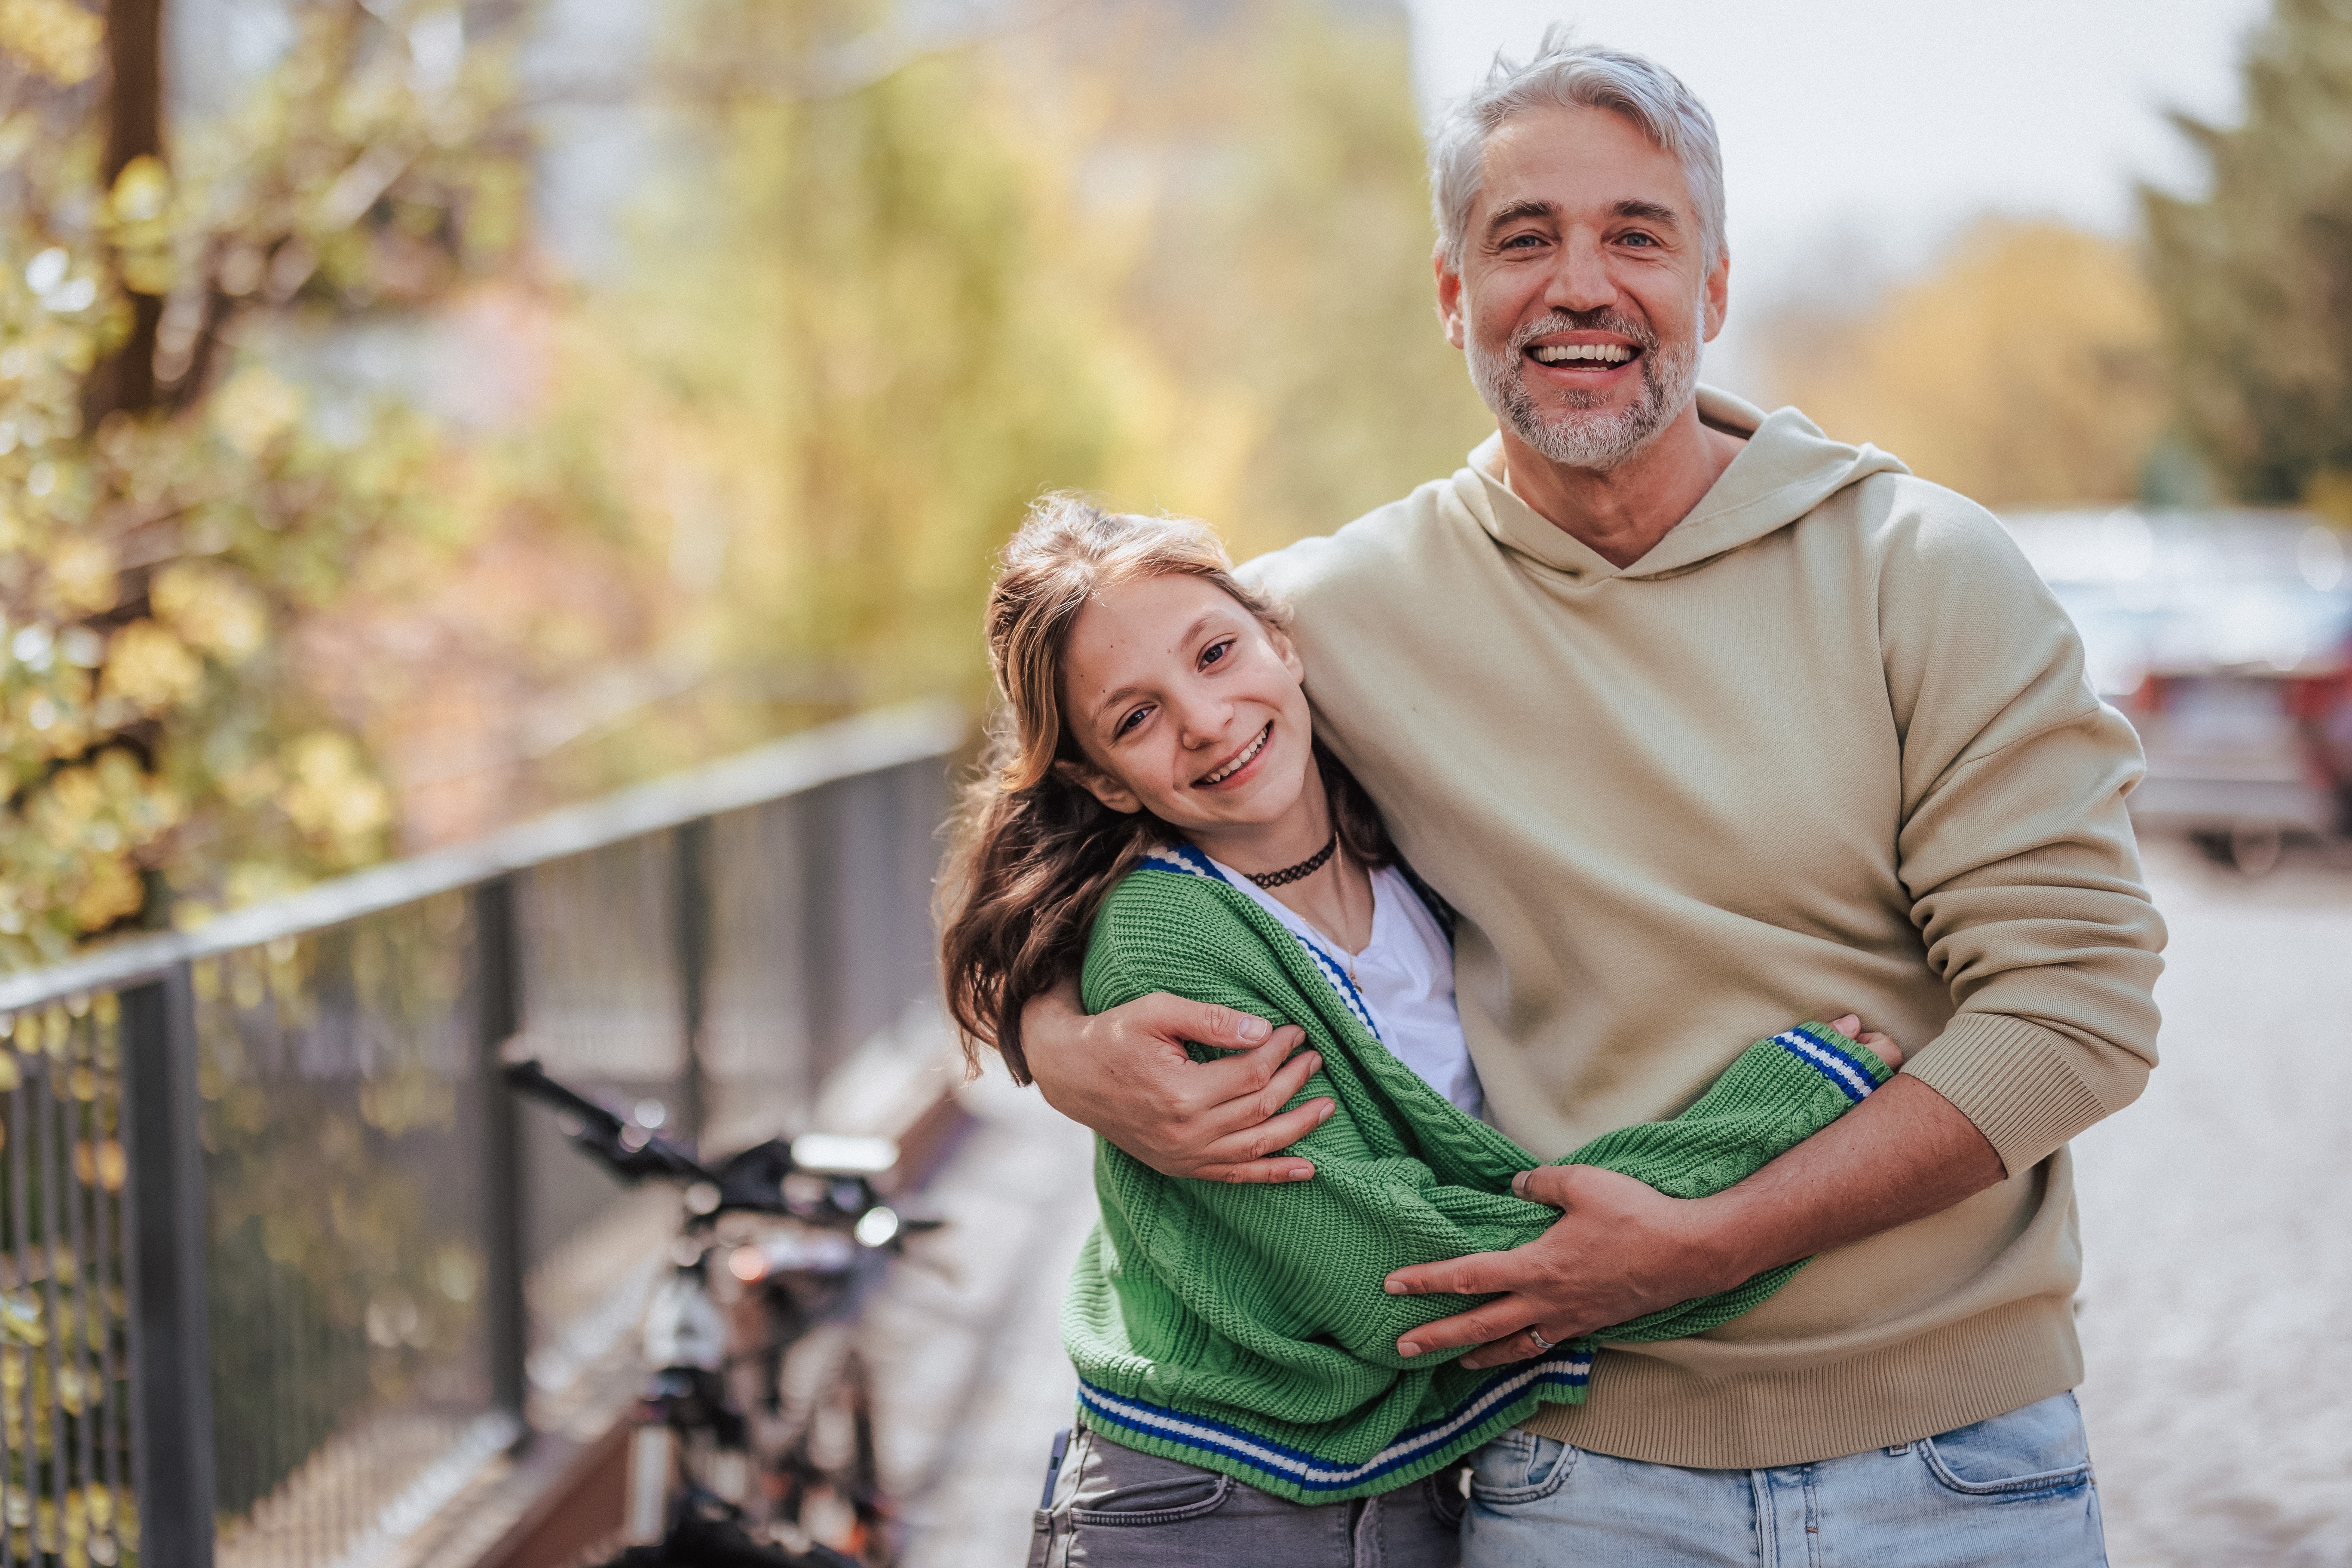 Un homme se demande pourquoi sa fille a soudainement changé de comportement. | Source : Shutterstock